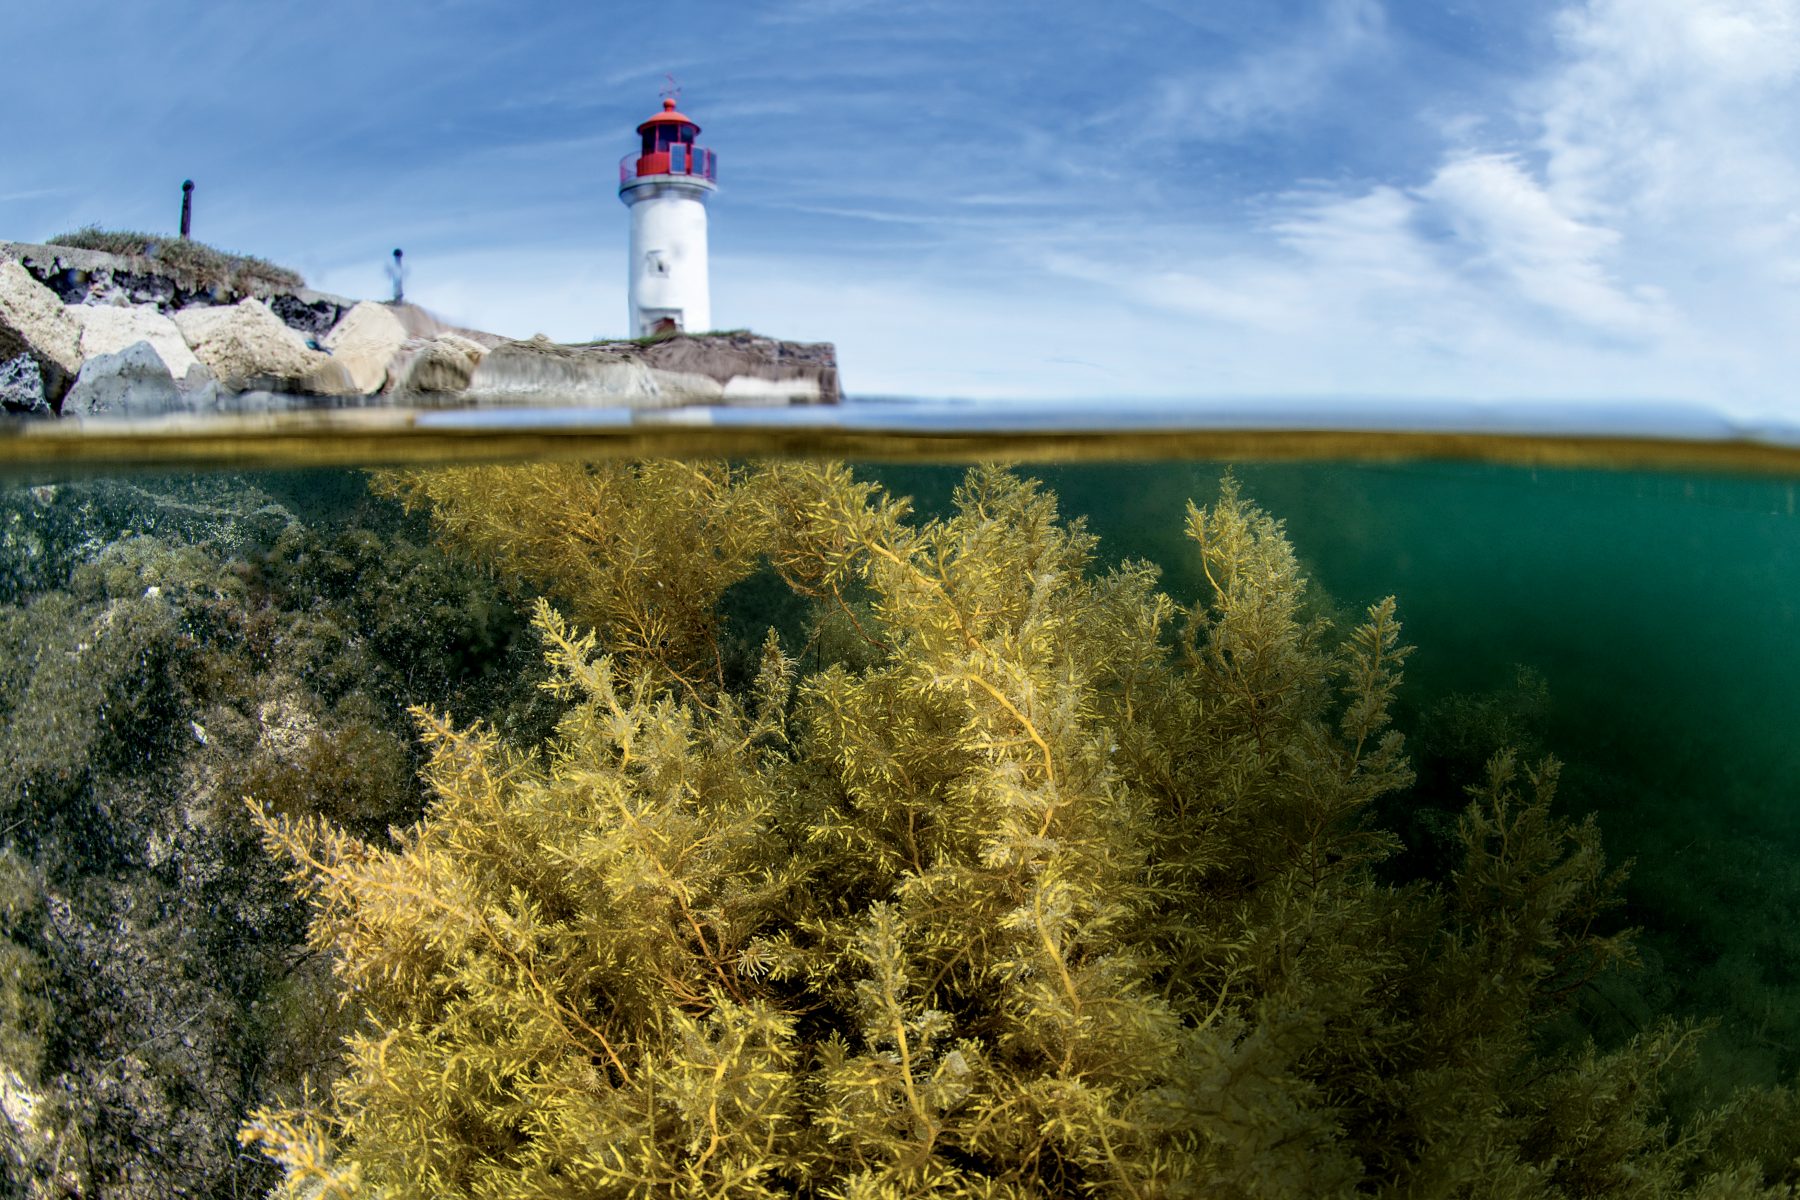 Les algues vertes flirtent avec la surface terrestre et l'eau douce - La  Salamandre